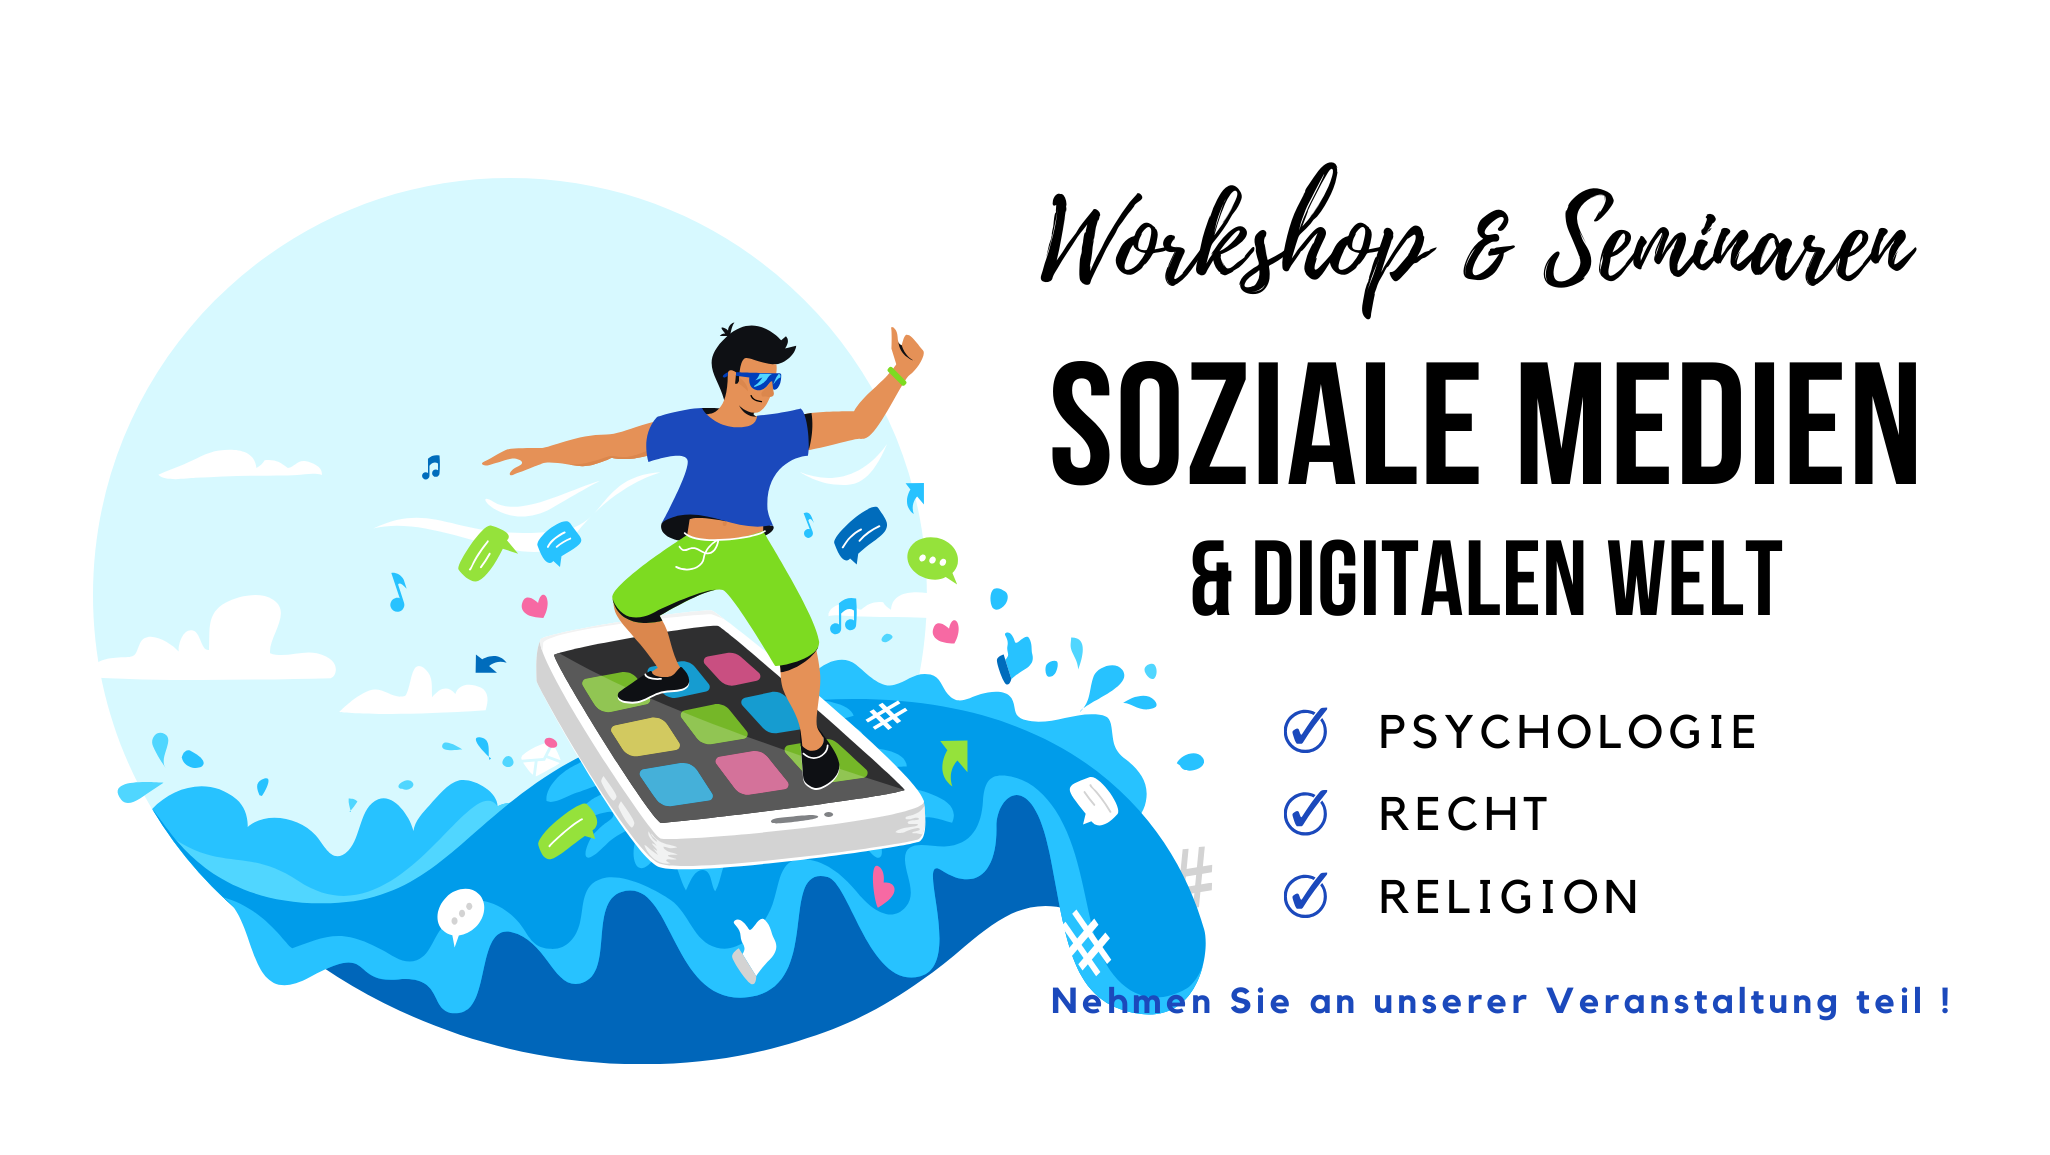 Global Warning! Workshop über soziale Medien und die digitale Welt